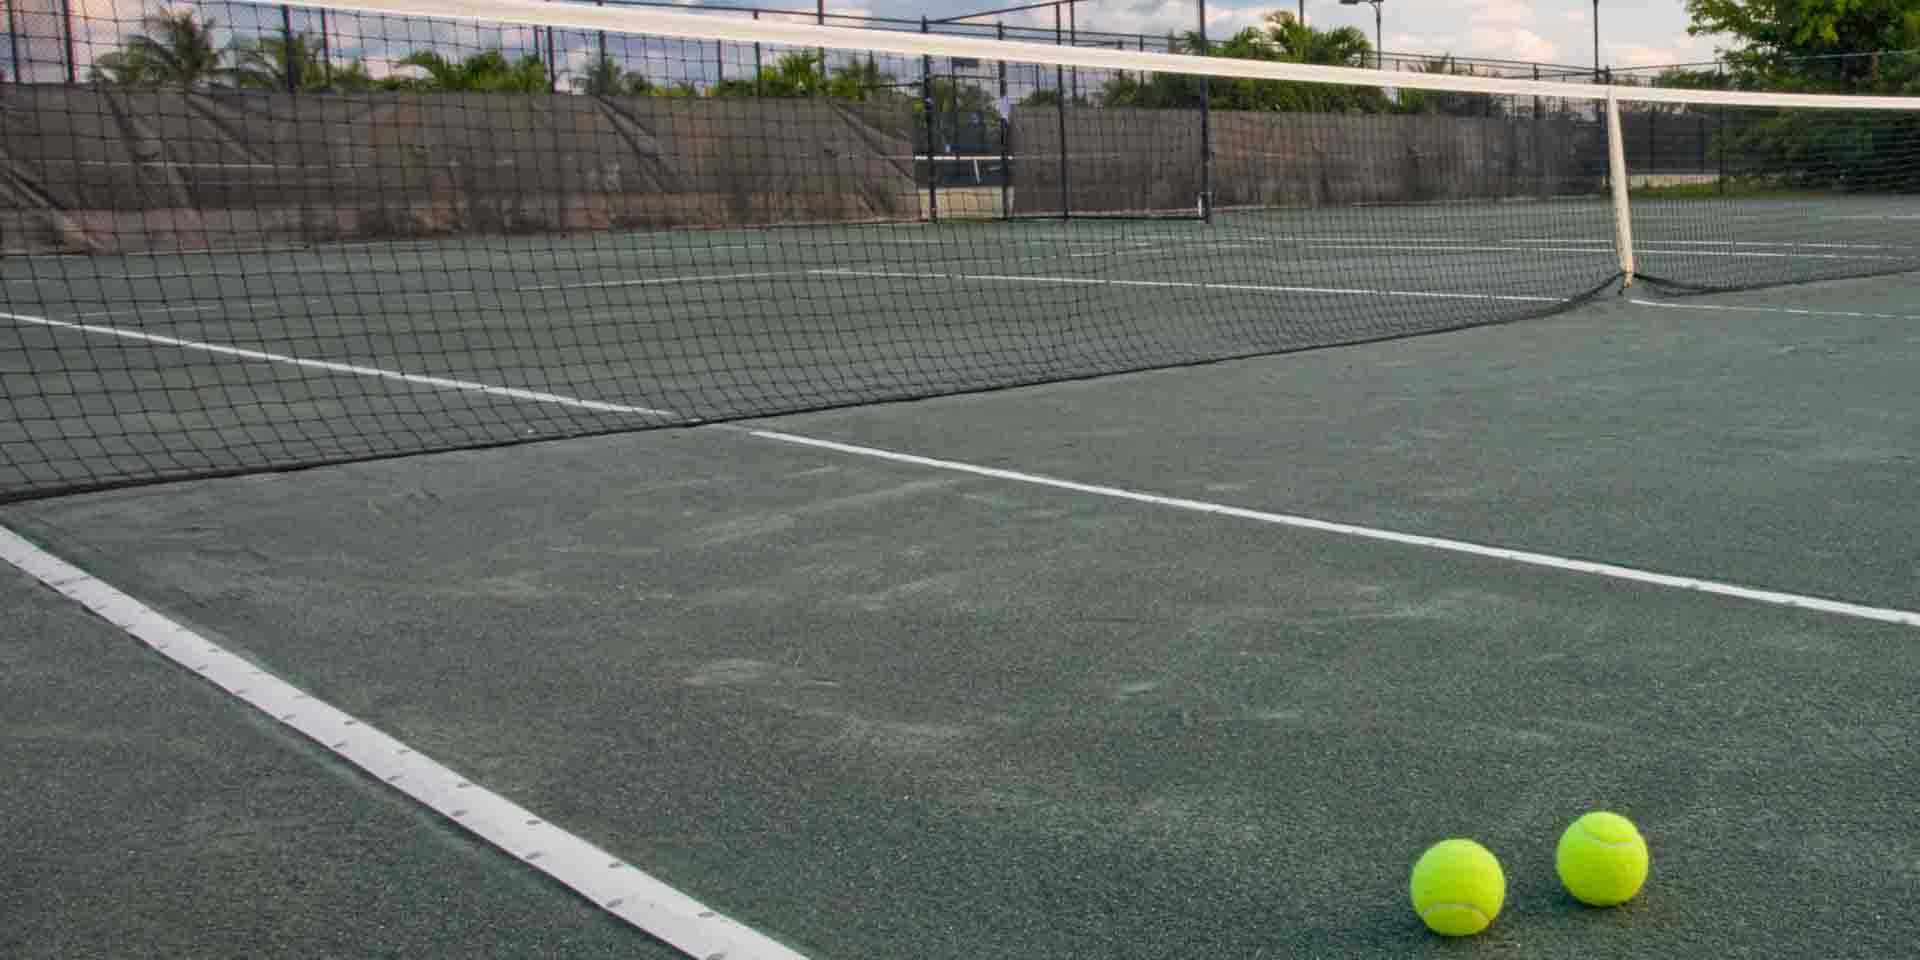 Tennis balls on a court